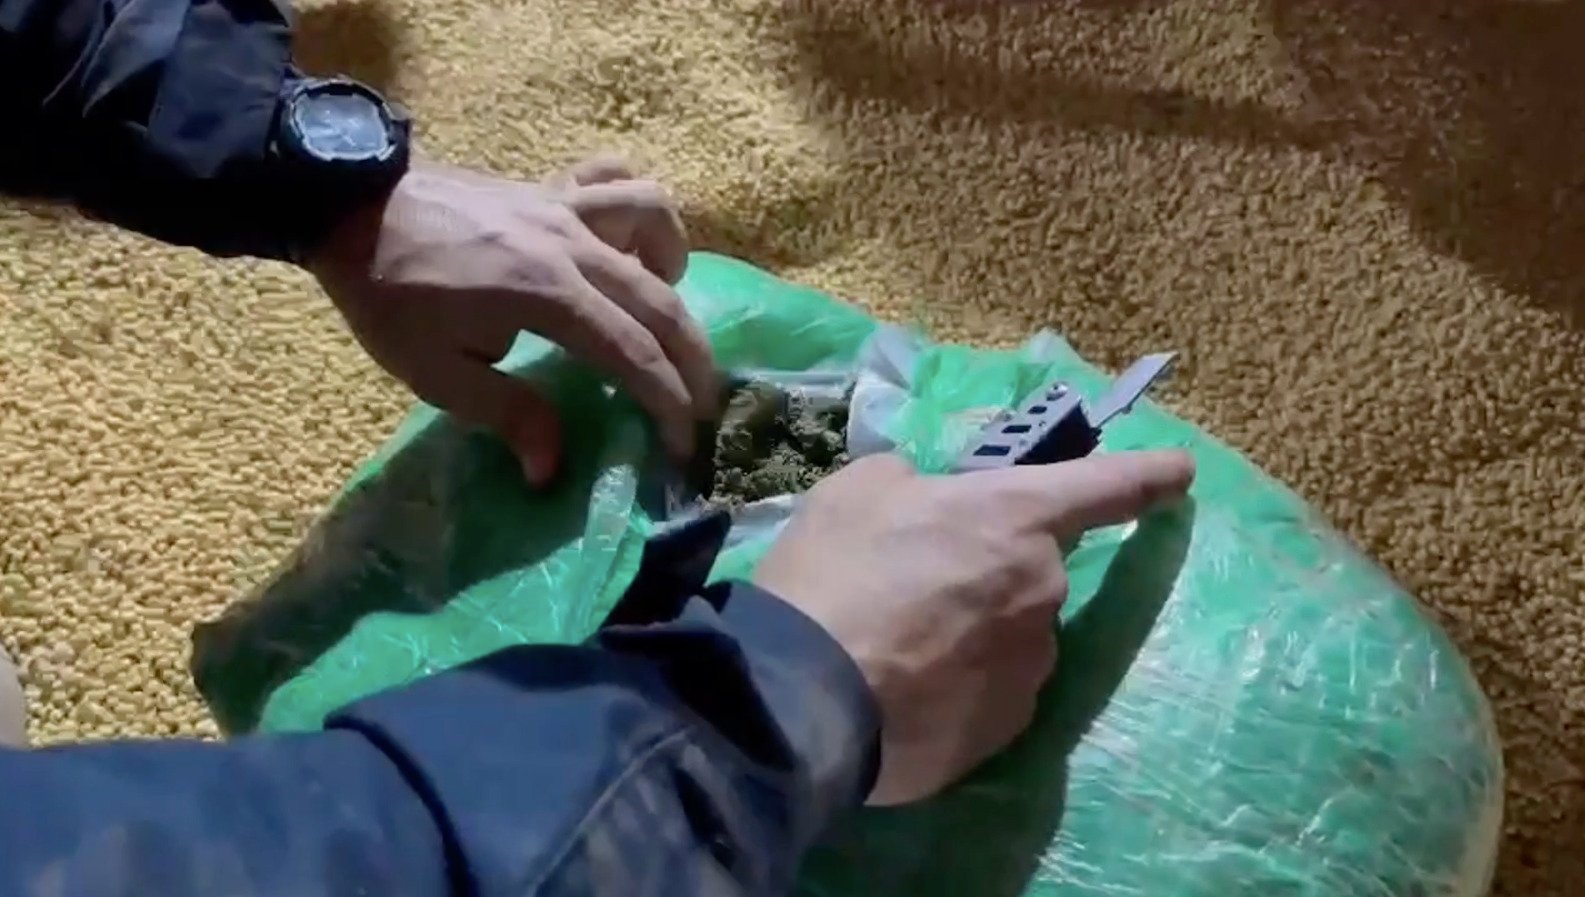 Apreensão de maconha em carga de soja no paraná